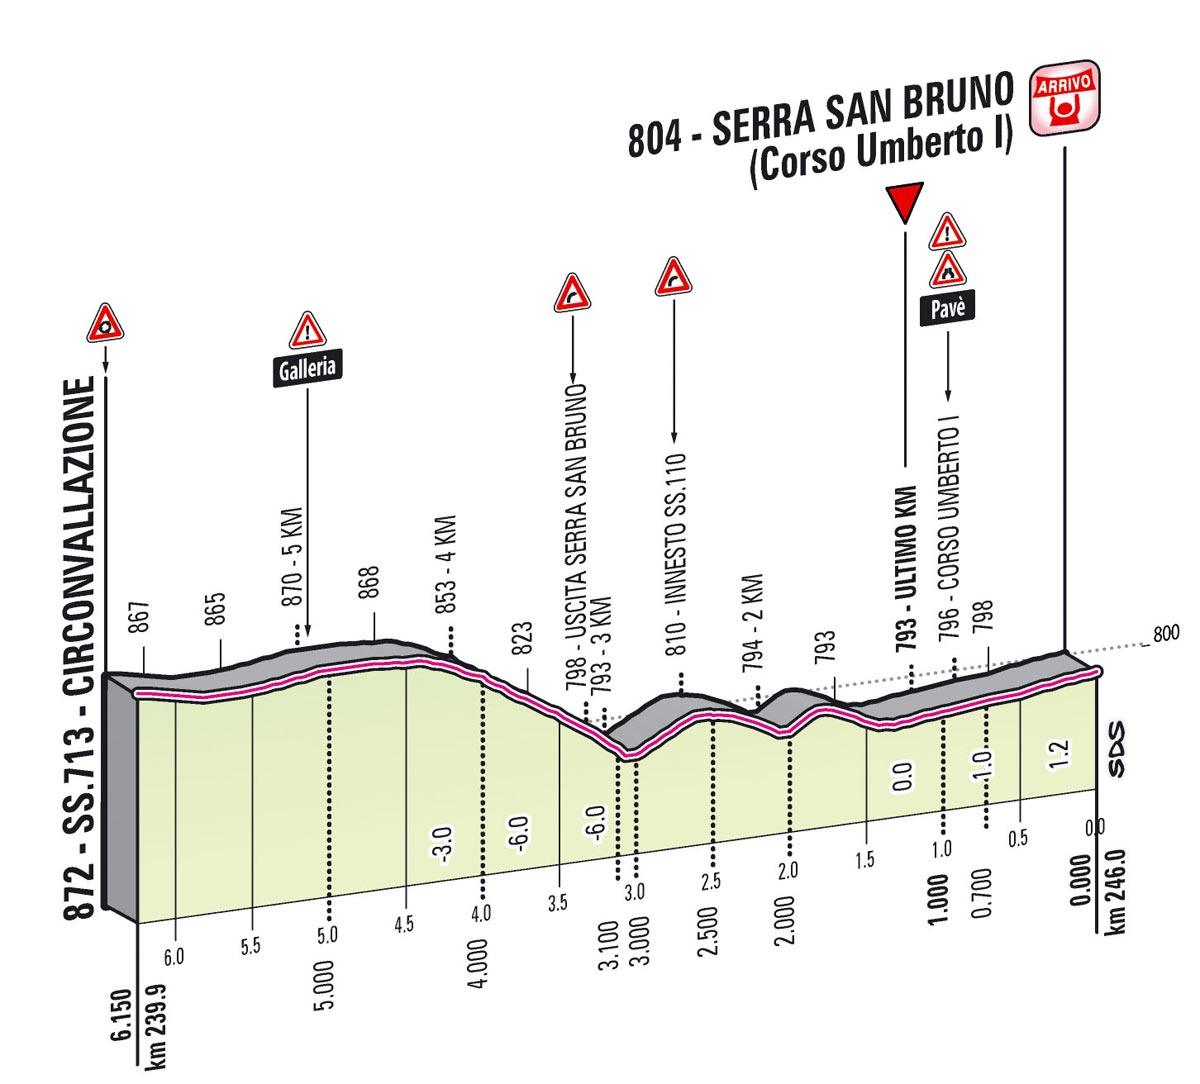 Giro d'Italia 2013 Stage 4 last kms